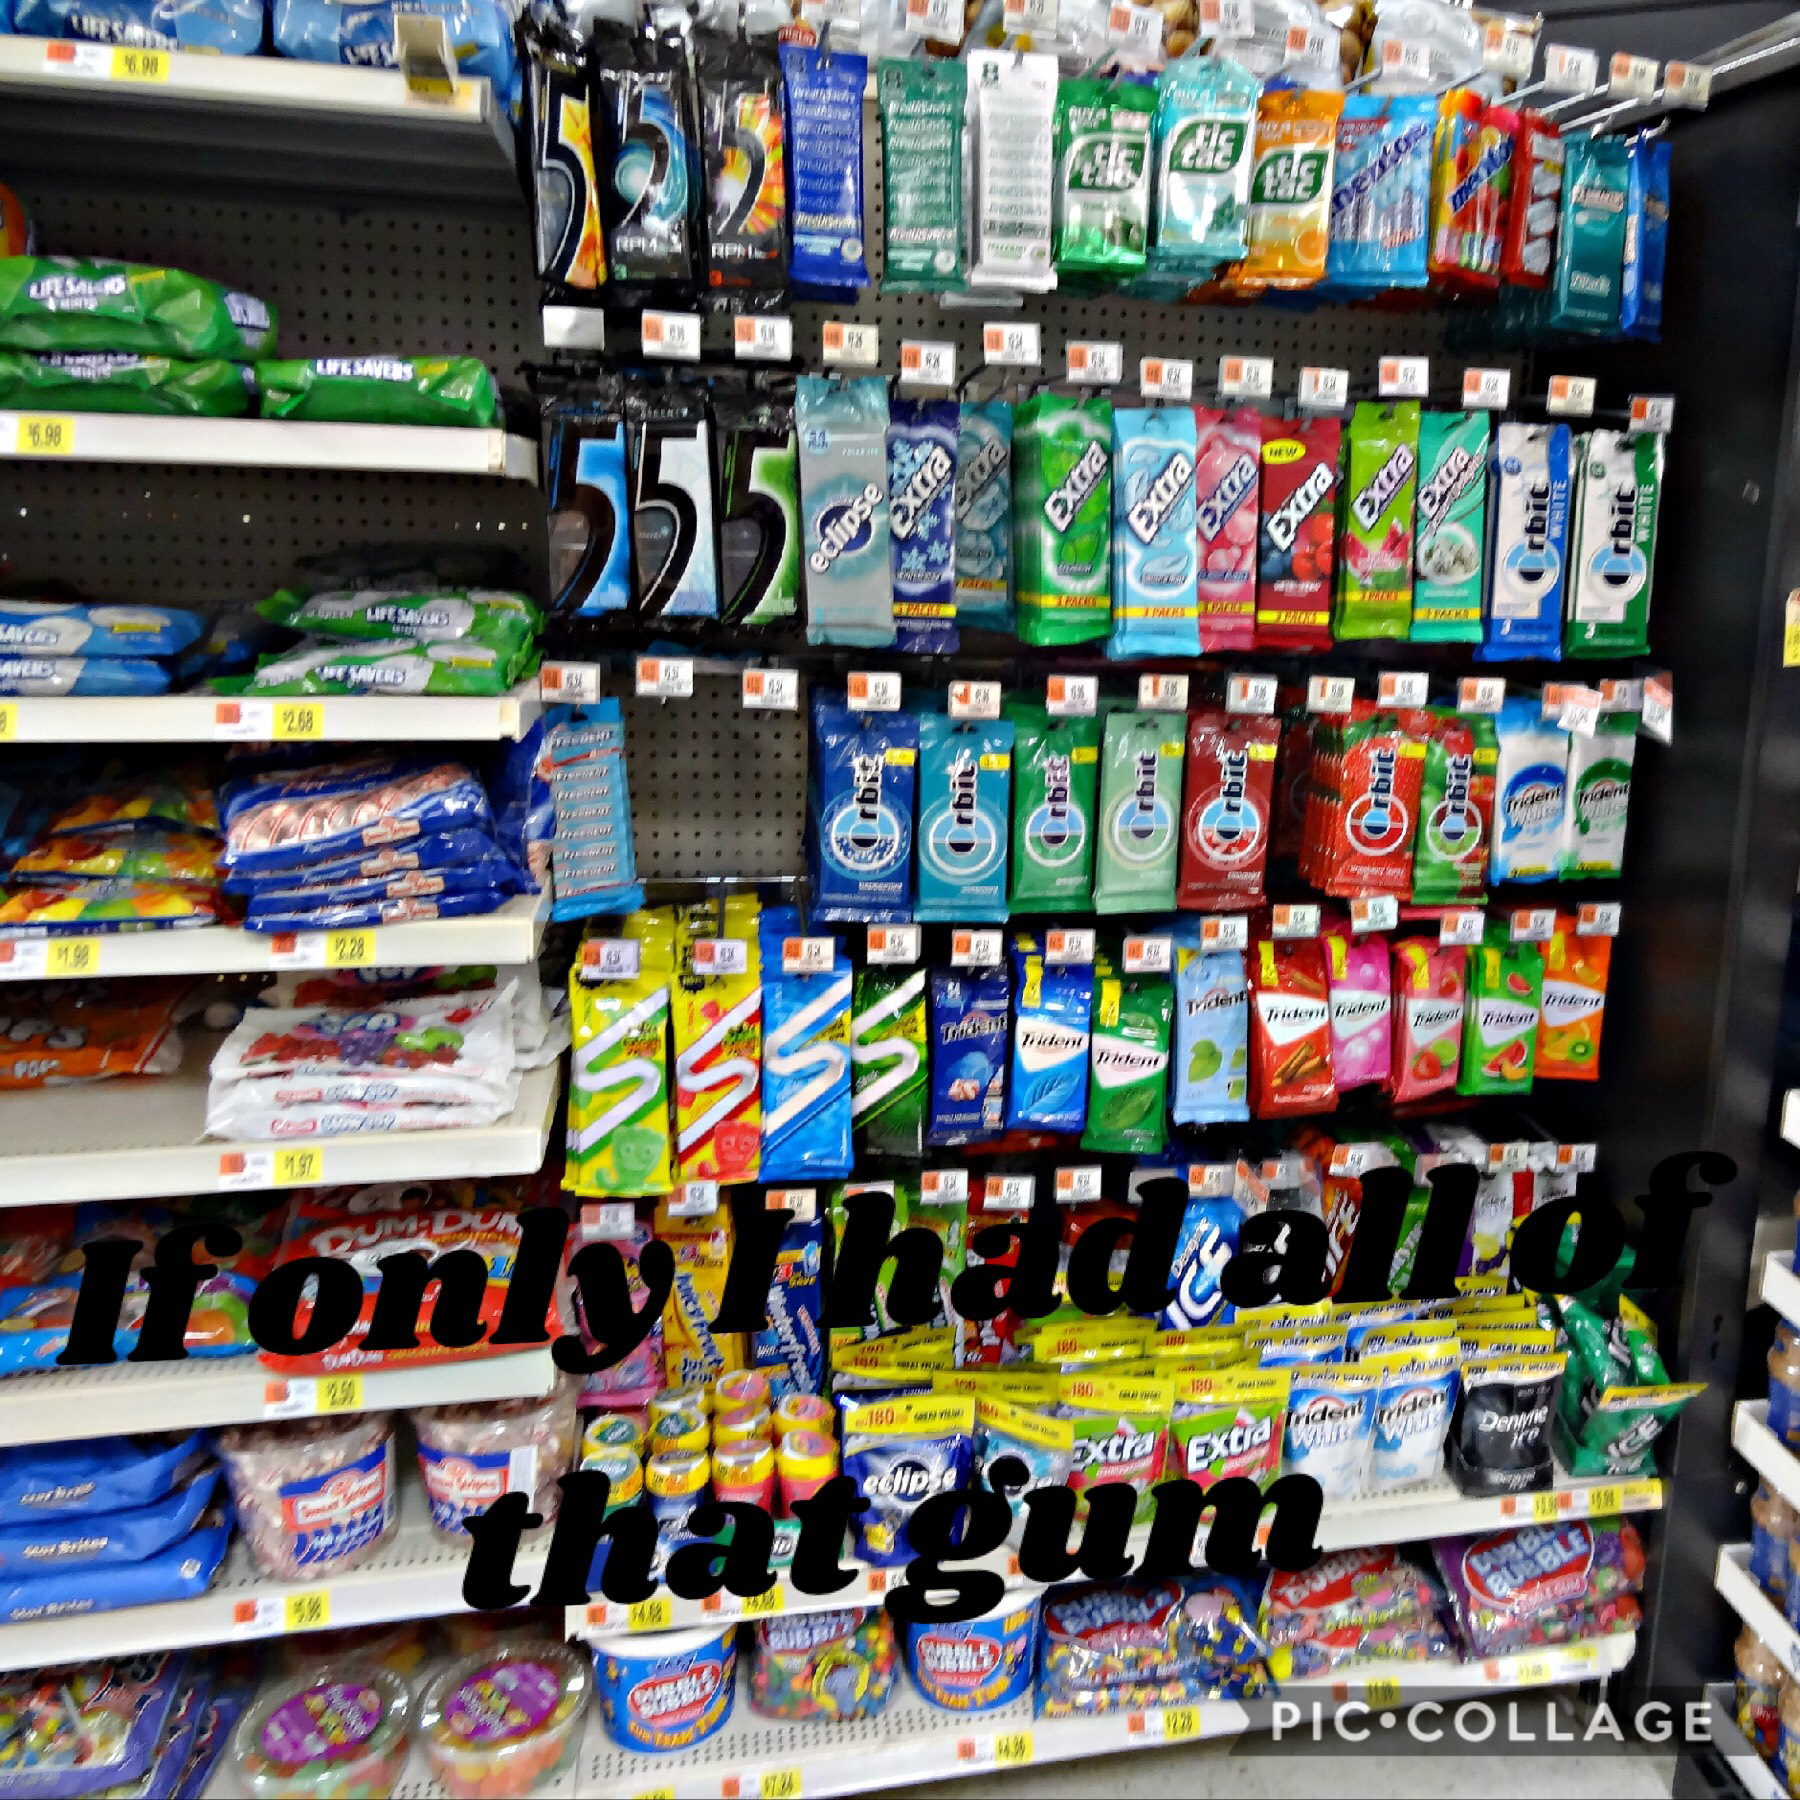 I love the gum aisle at Walmart 